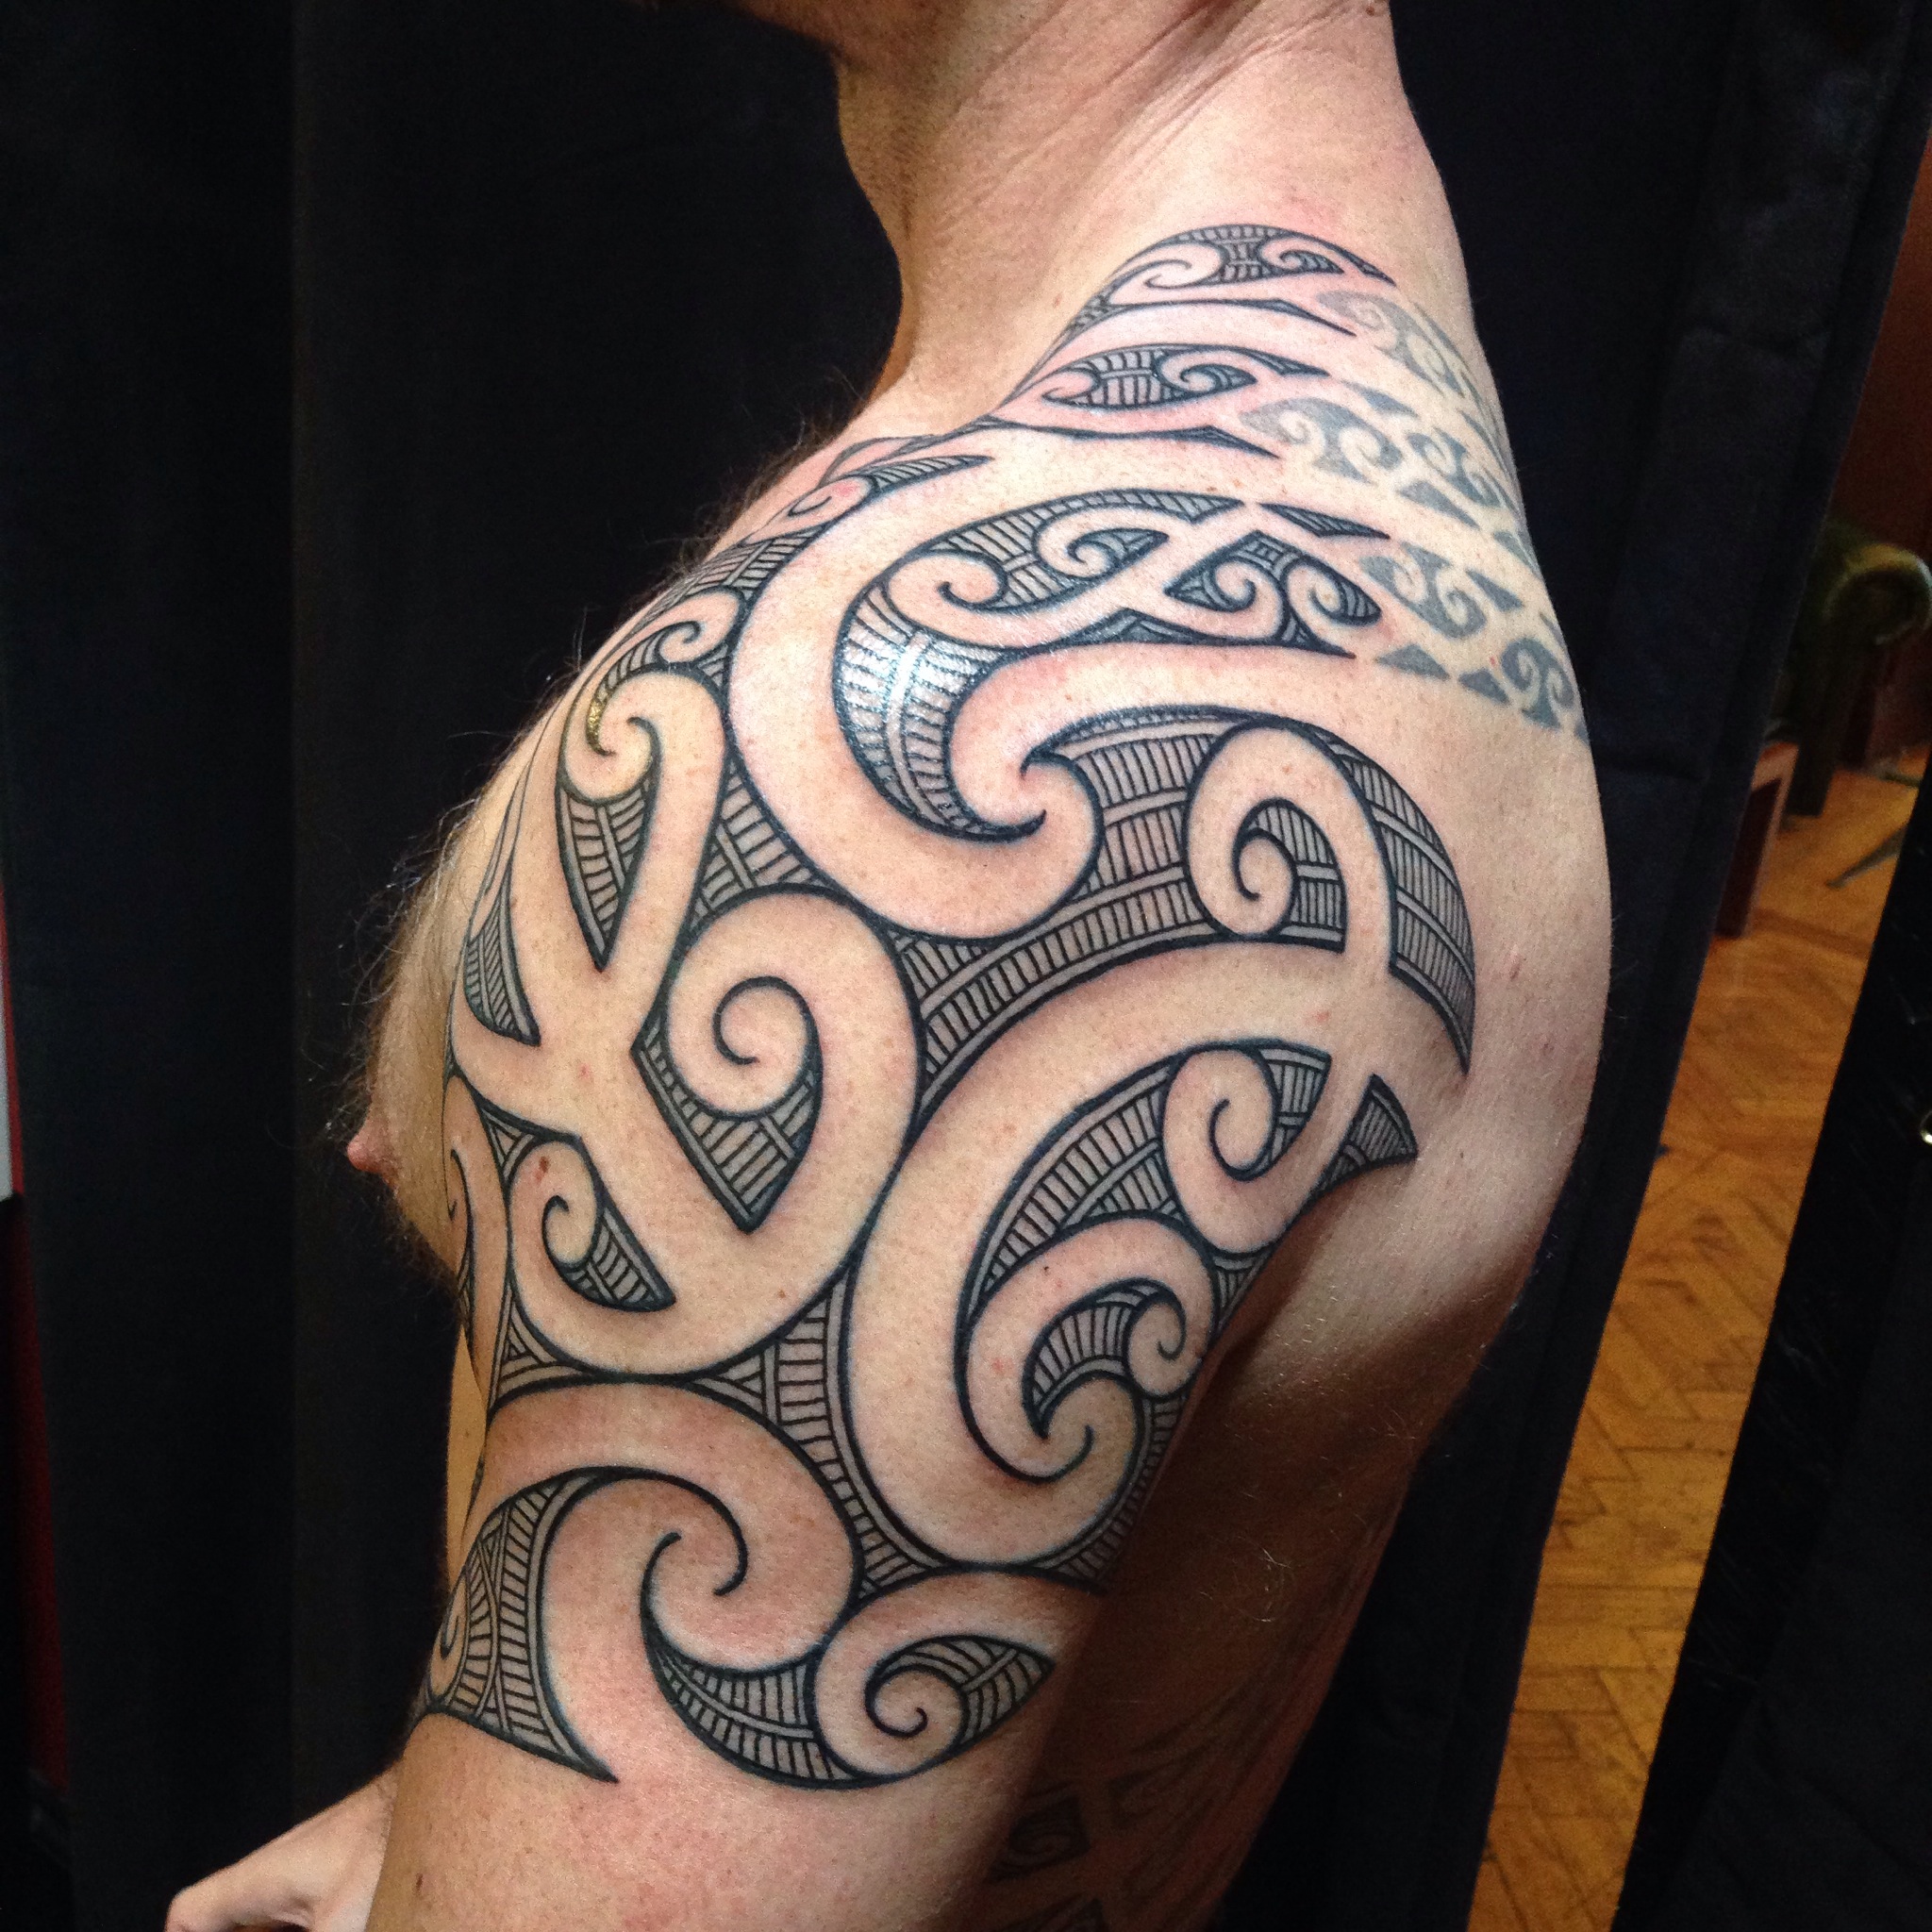 Kirituhi is a Maori-style tattoo